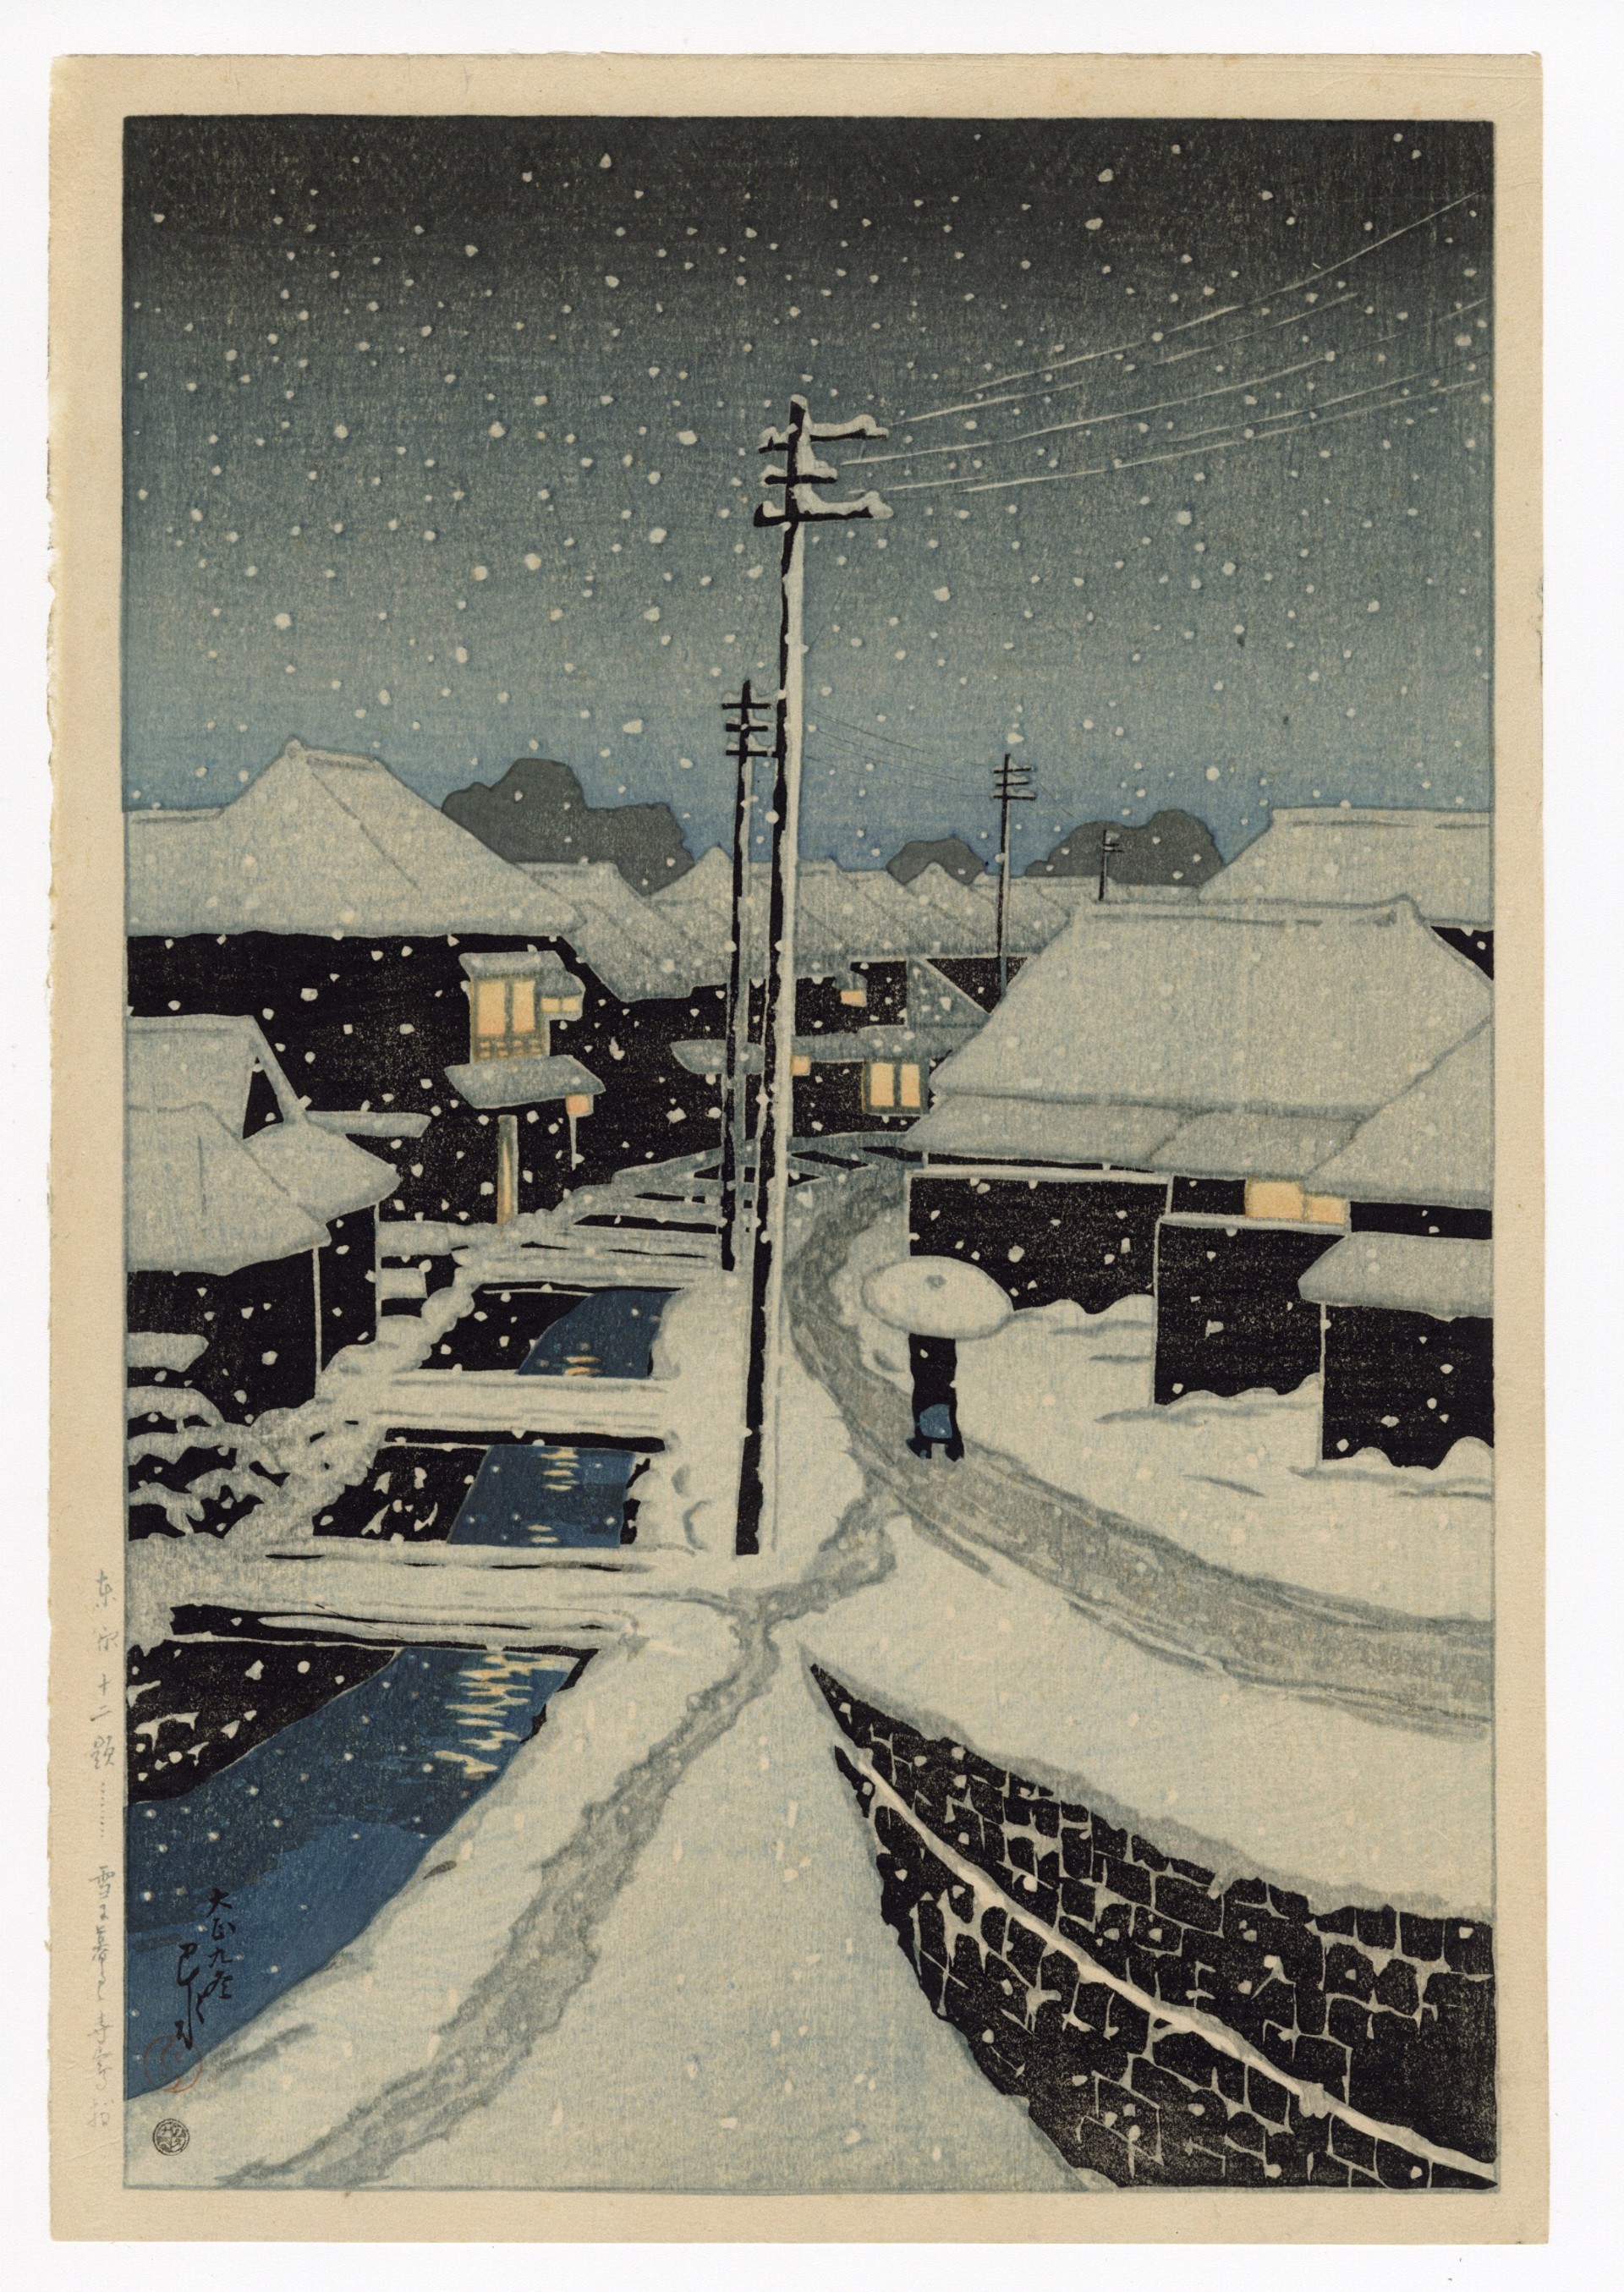 Evening Snow at Terajima by Hasui